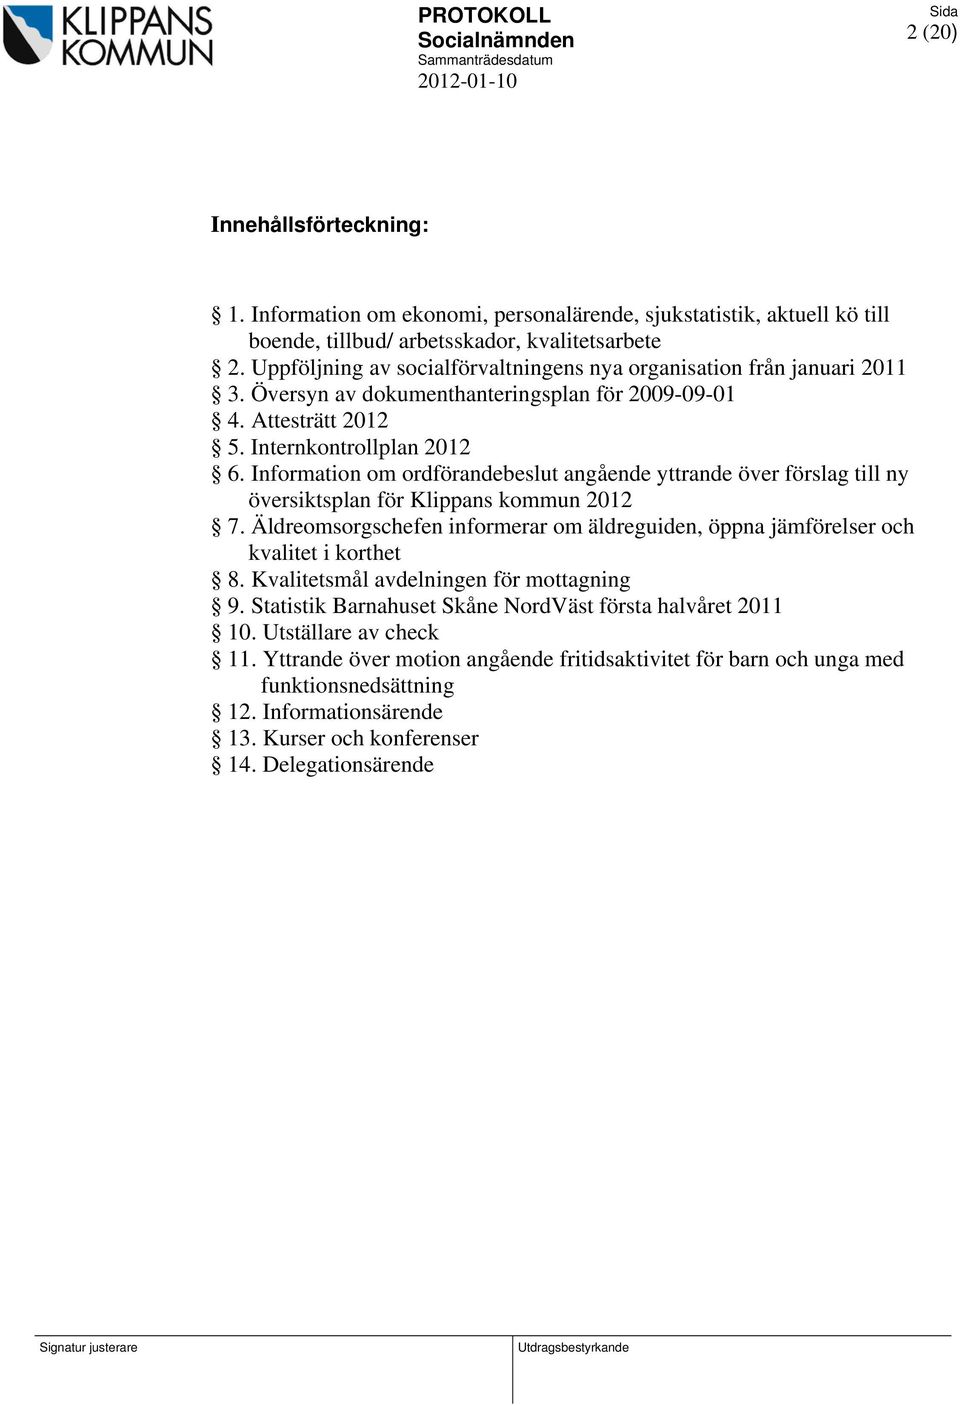 Information om ordförandebeslut angående yttrande över förslag till ny översiktsplan för Klippans kommun 2012 7.